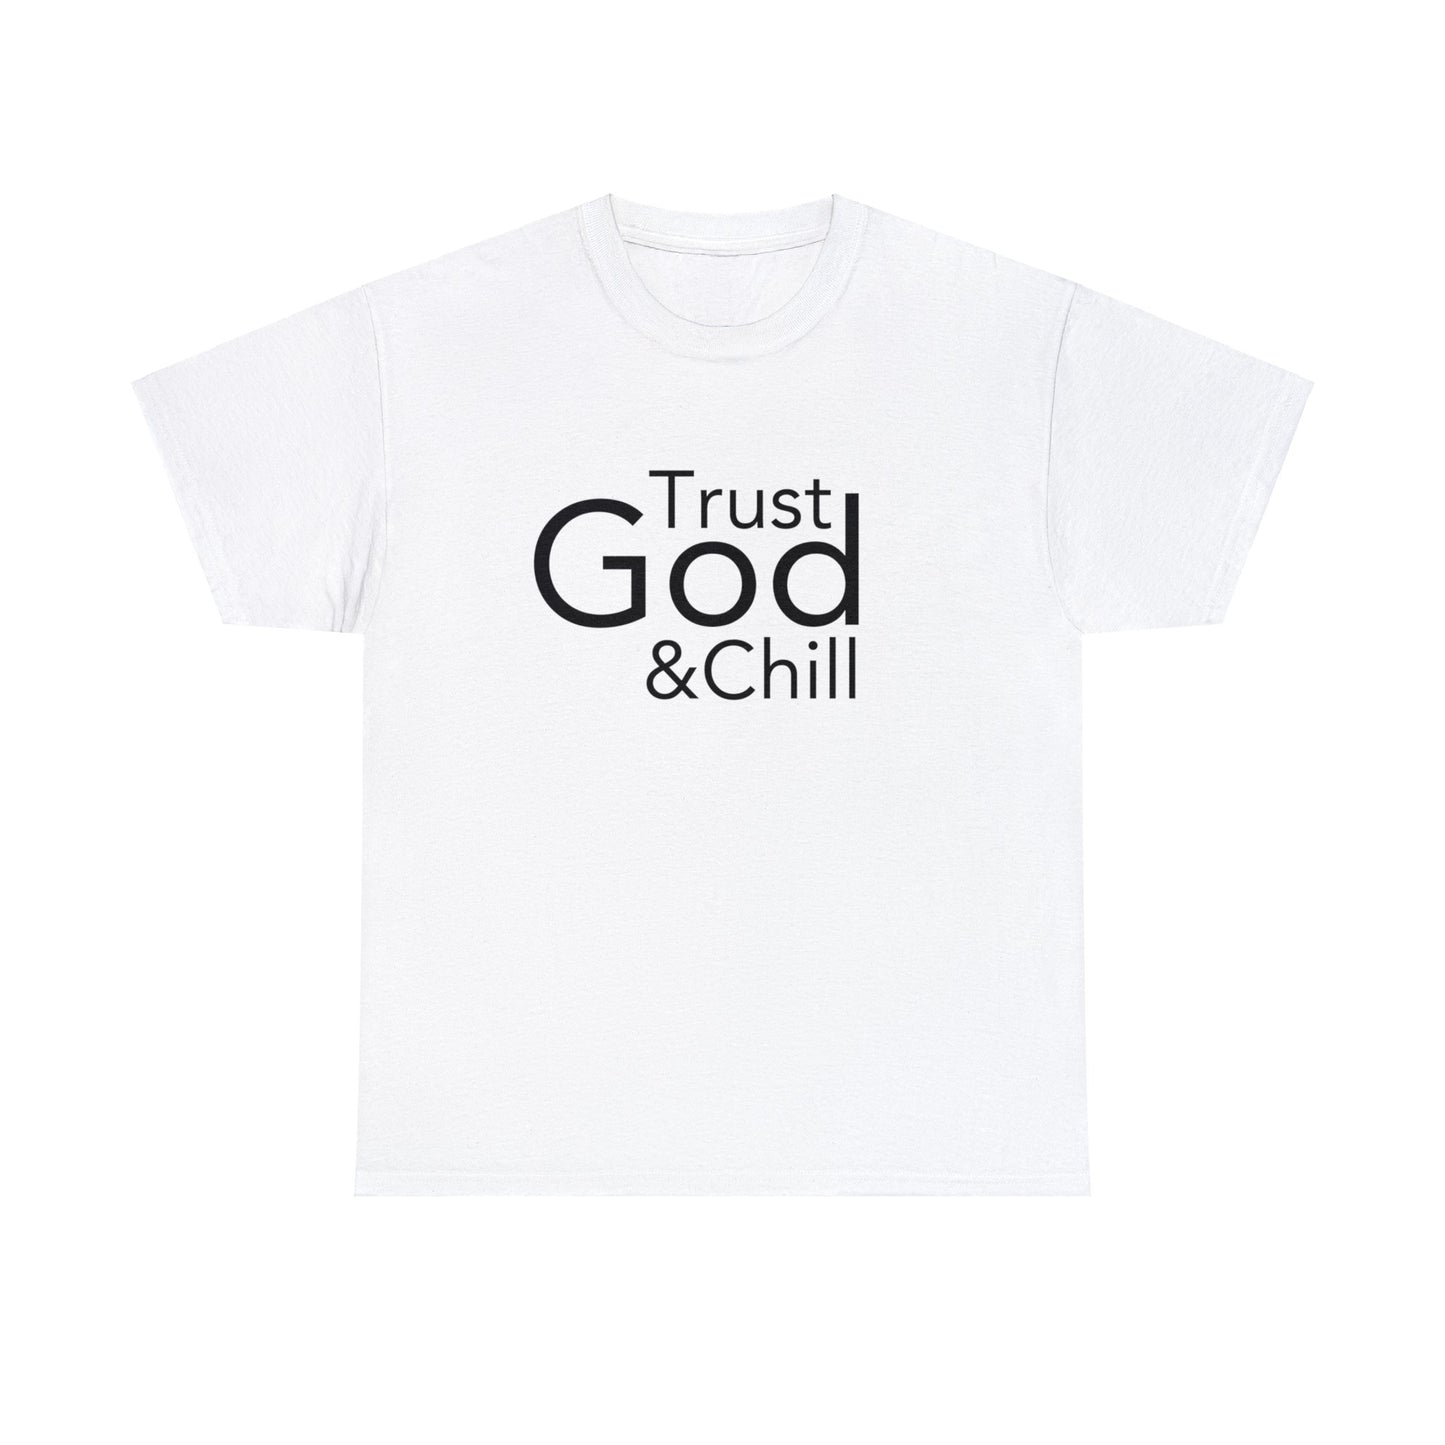 Trust God & Chill Tee - Black